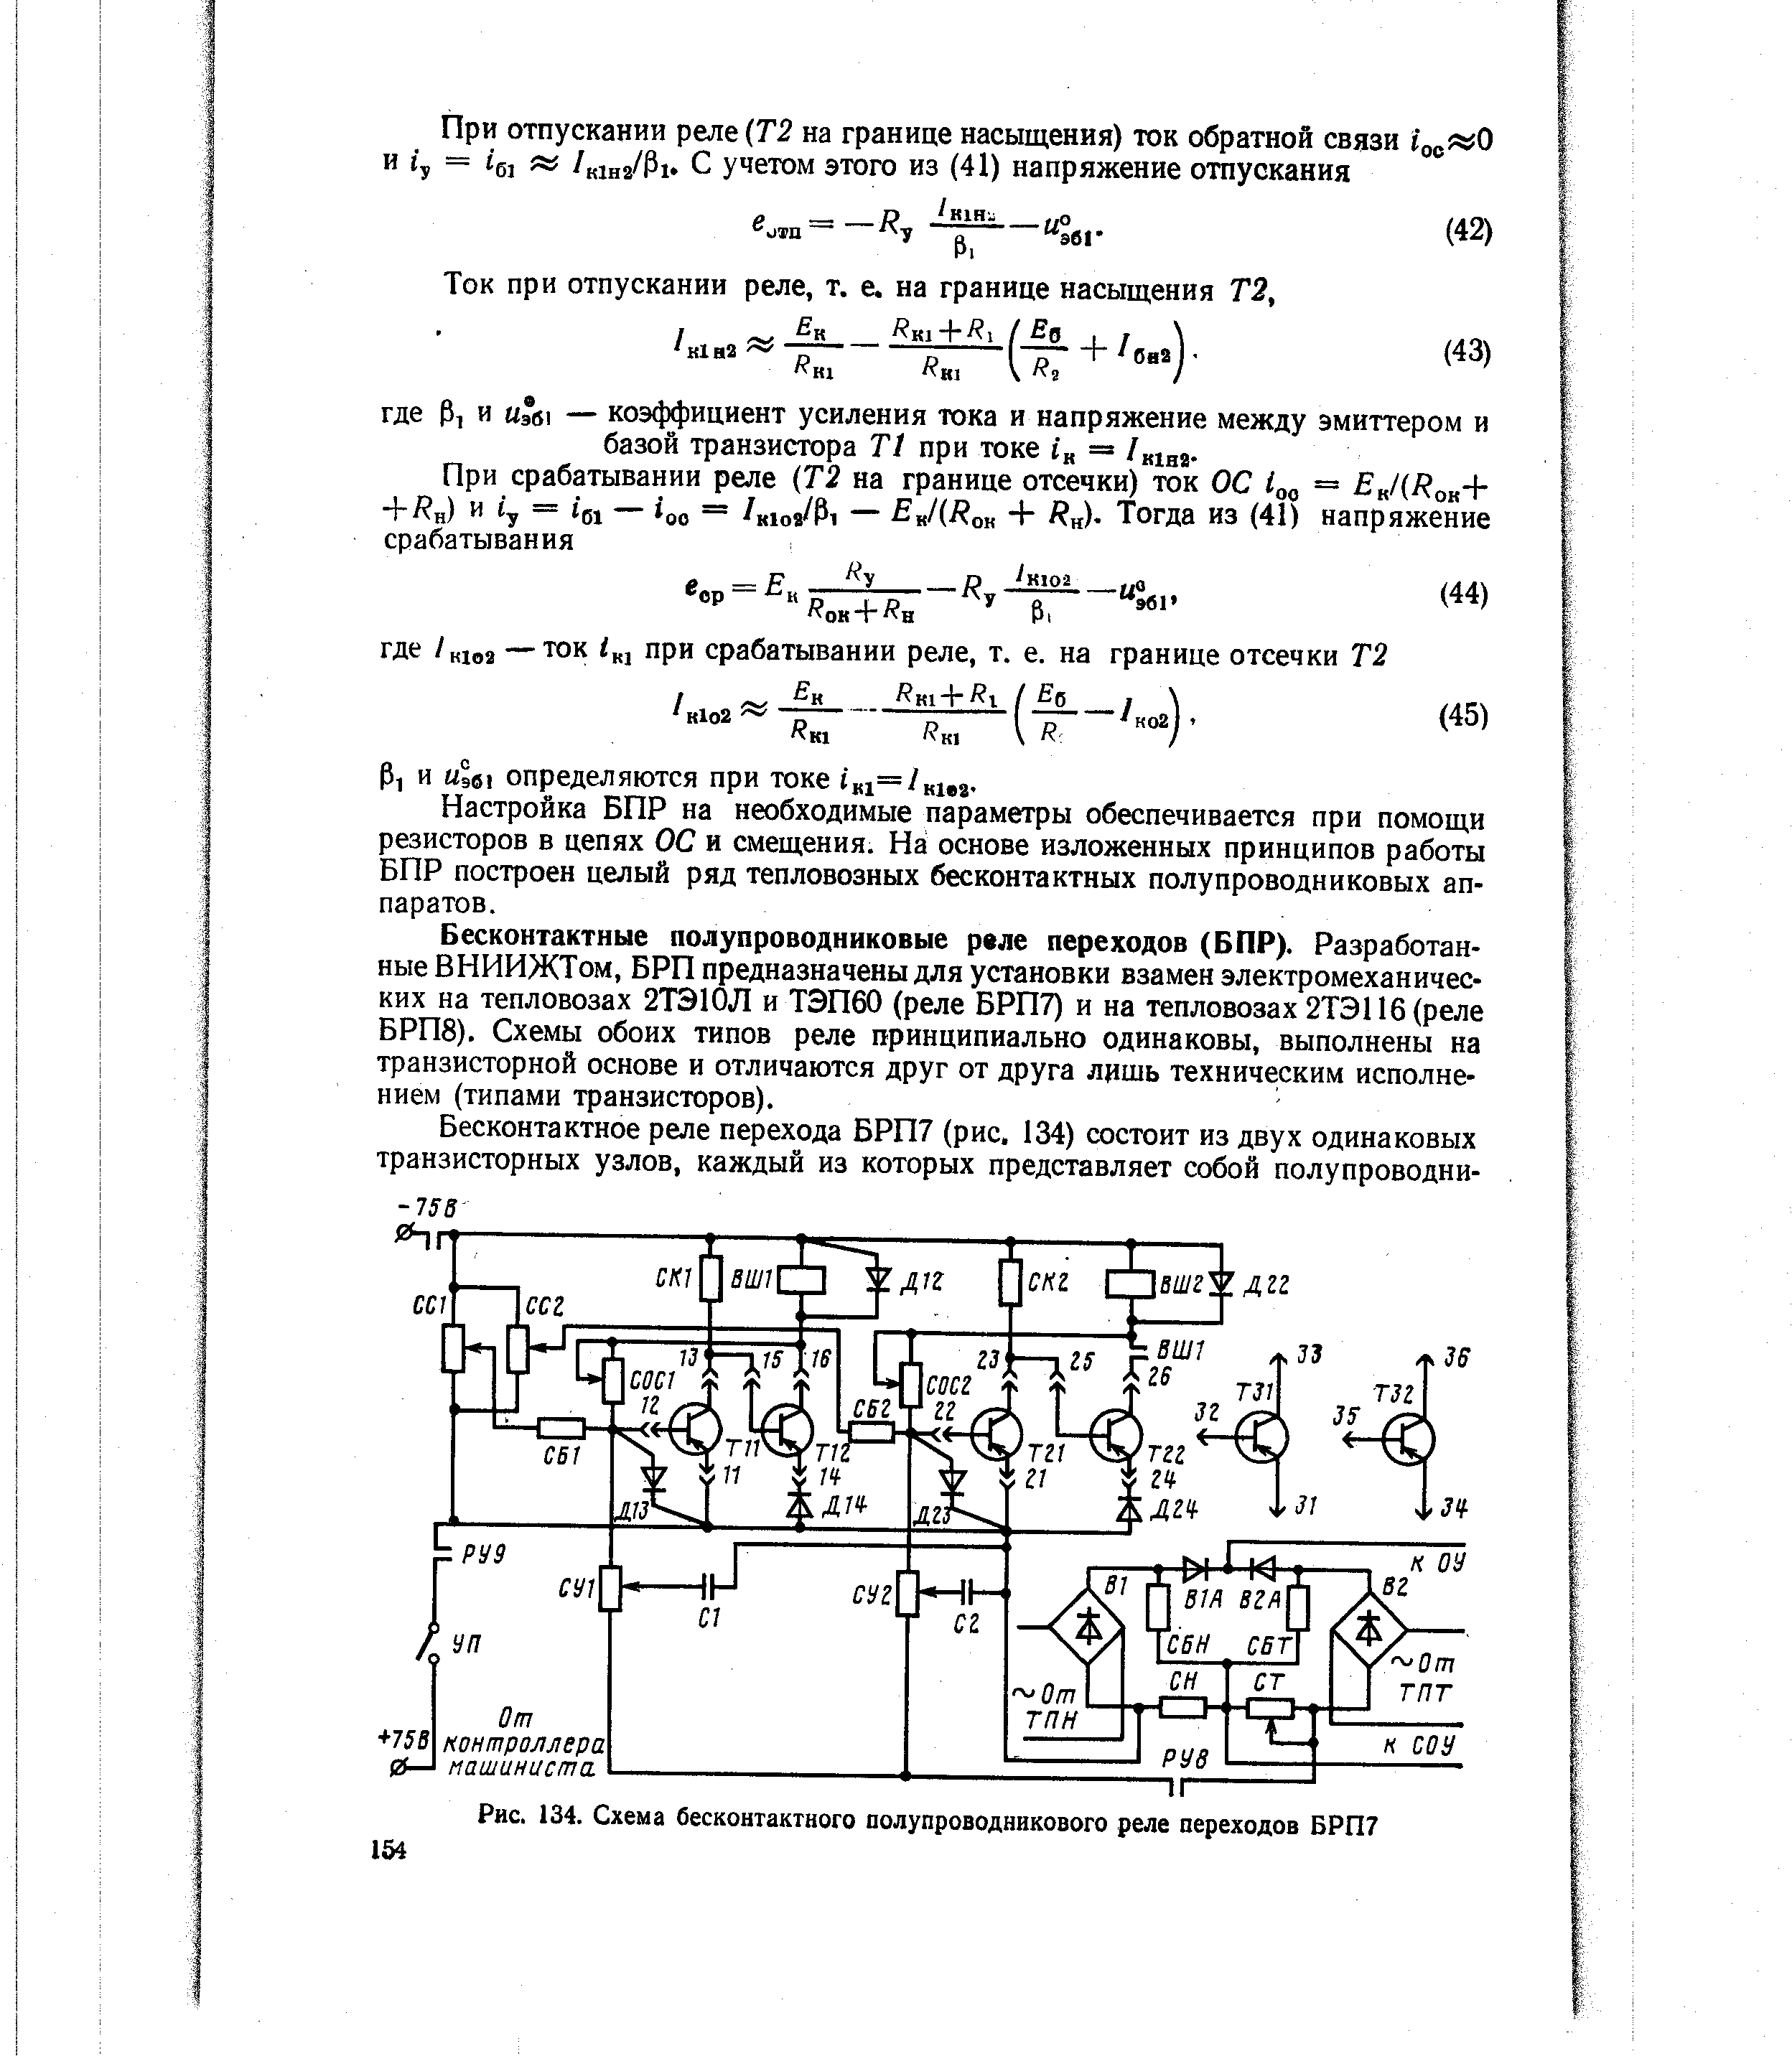 Рис. 134. Схема бесконтактного полупроводникового реле переходов БРП7
